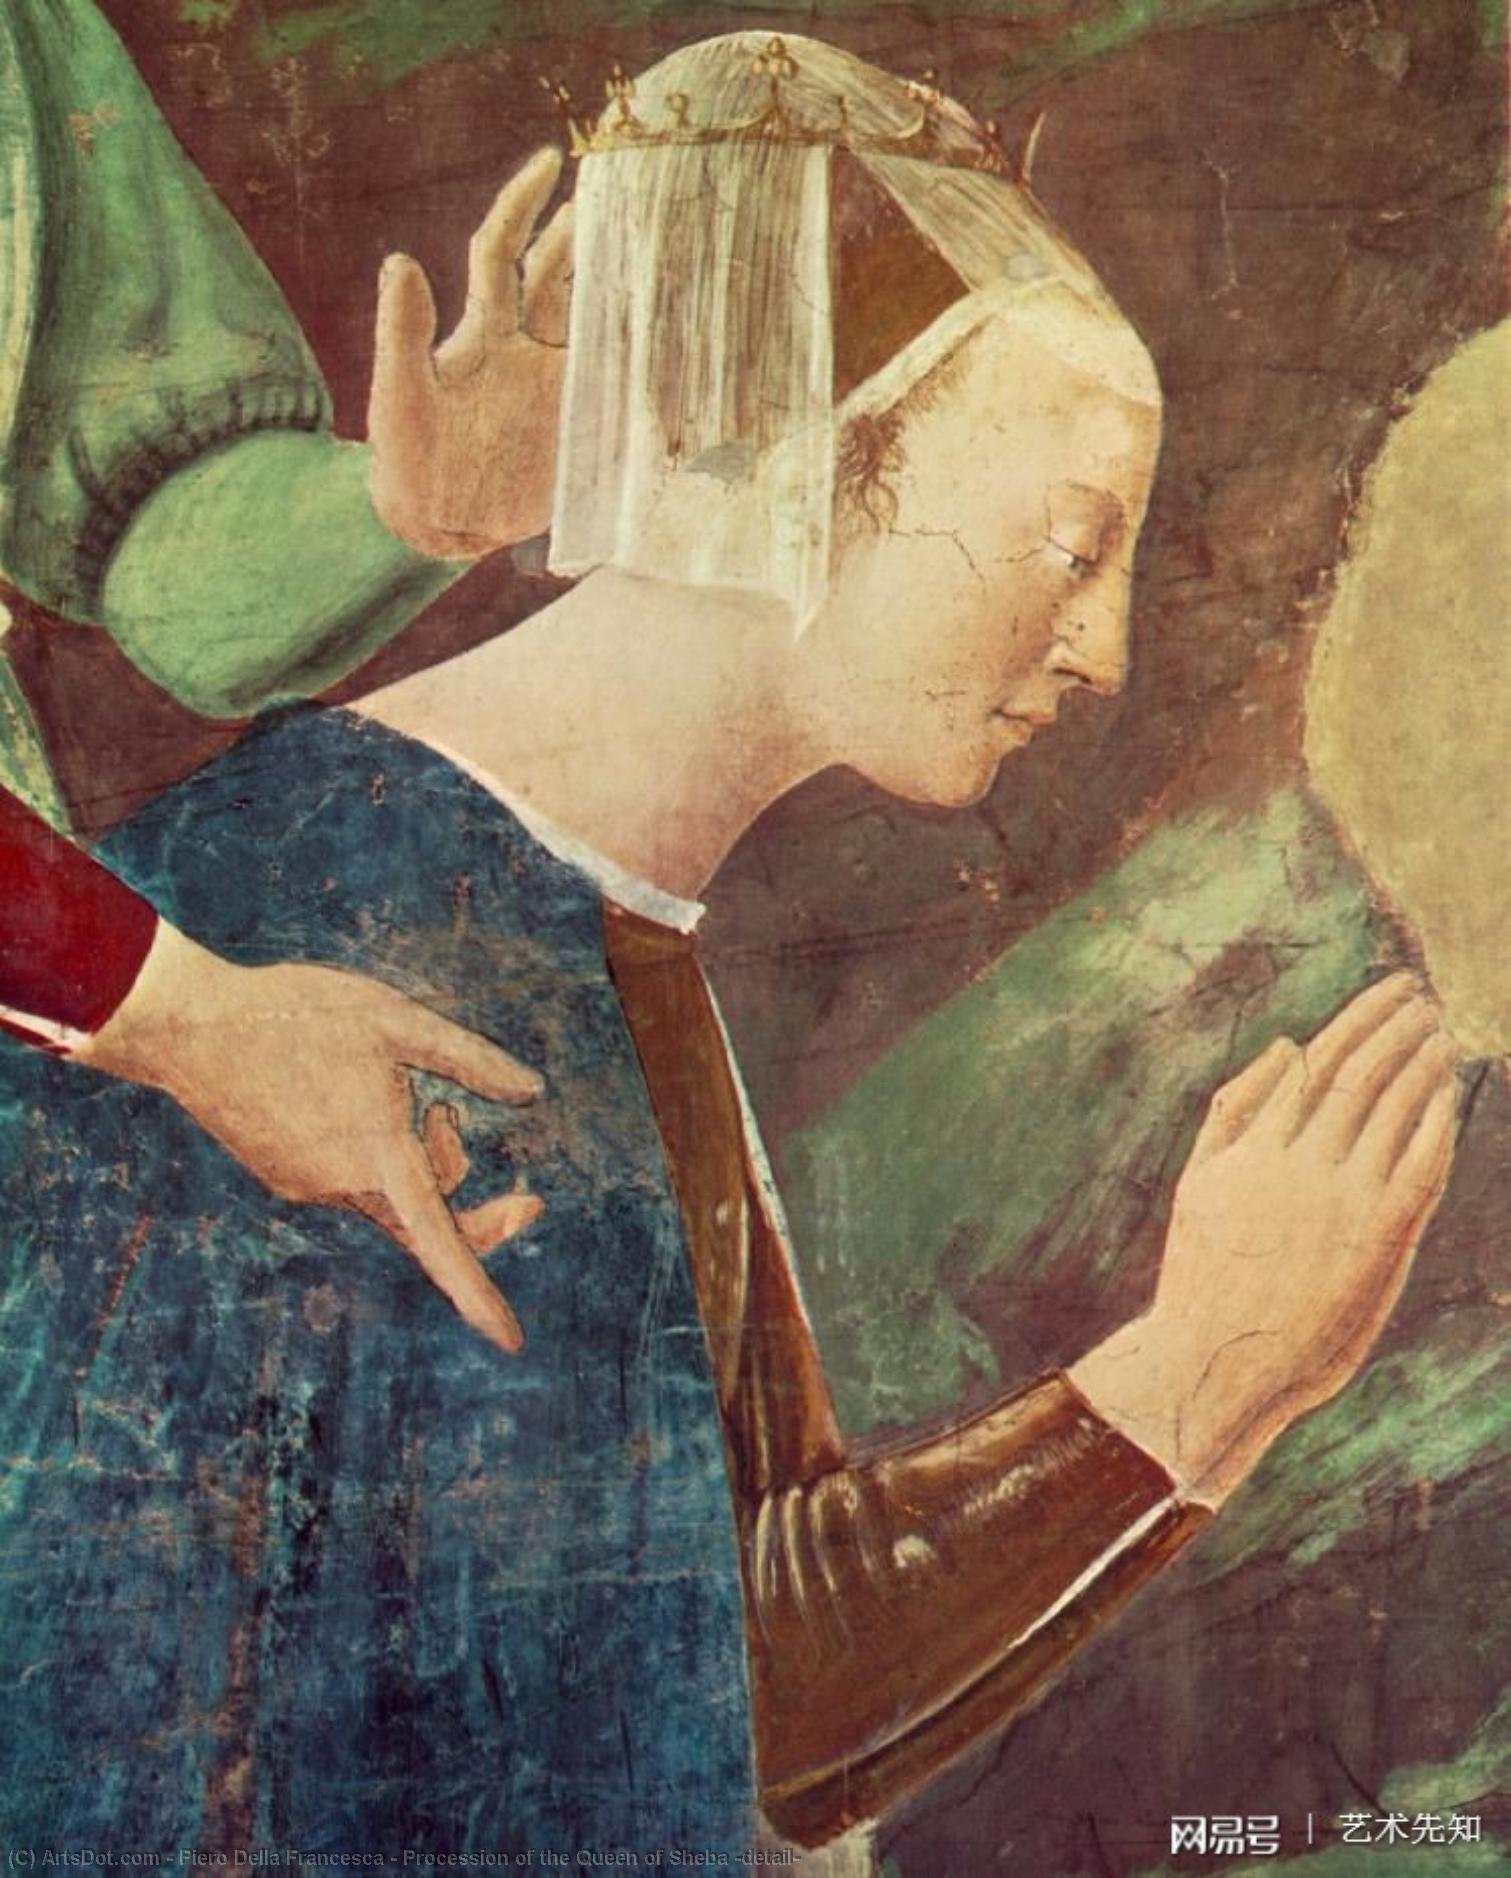 WikiOO.org - Енциклопедия за изящни изкуства - Живопис, Произведения на изкуството Piero Della Francesca - Procession of the Queen of Sheba (detail)